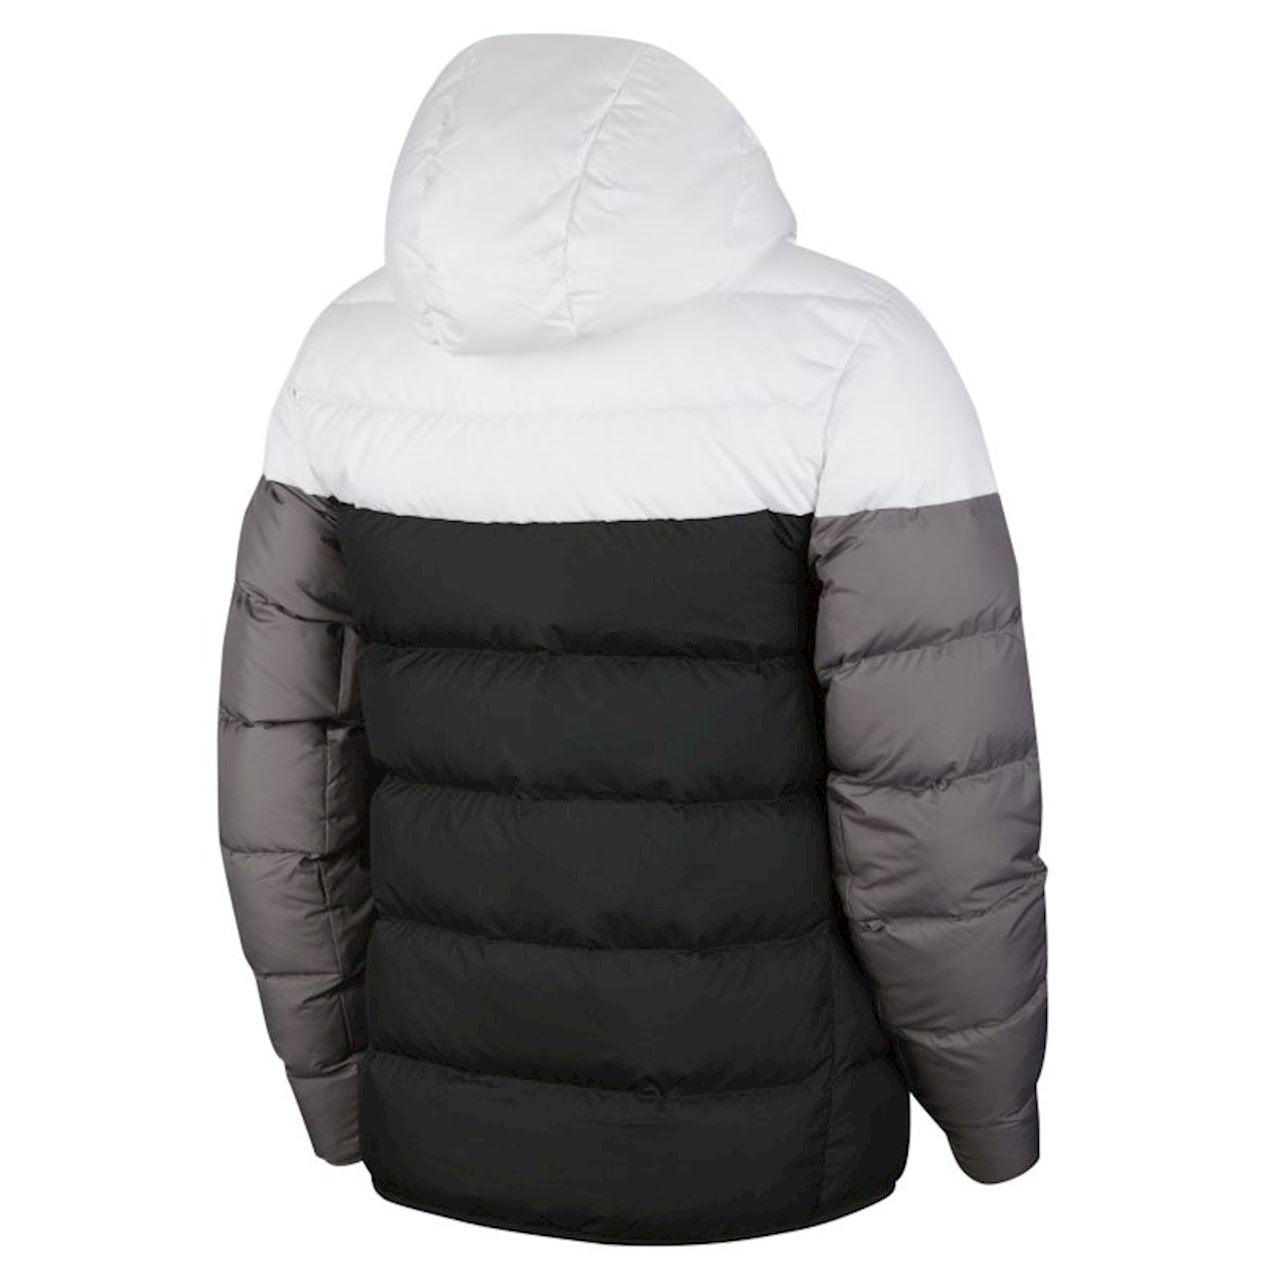 hoofdstad Portaal kom tot rust Nike Sportswear Men's Down Fill Wind Runner Coat in White, Black & Gre |  Find Your Sole